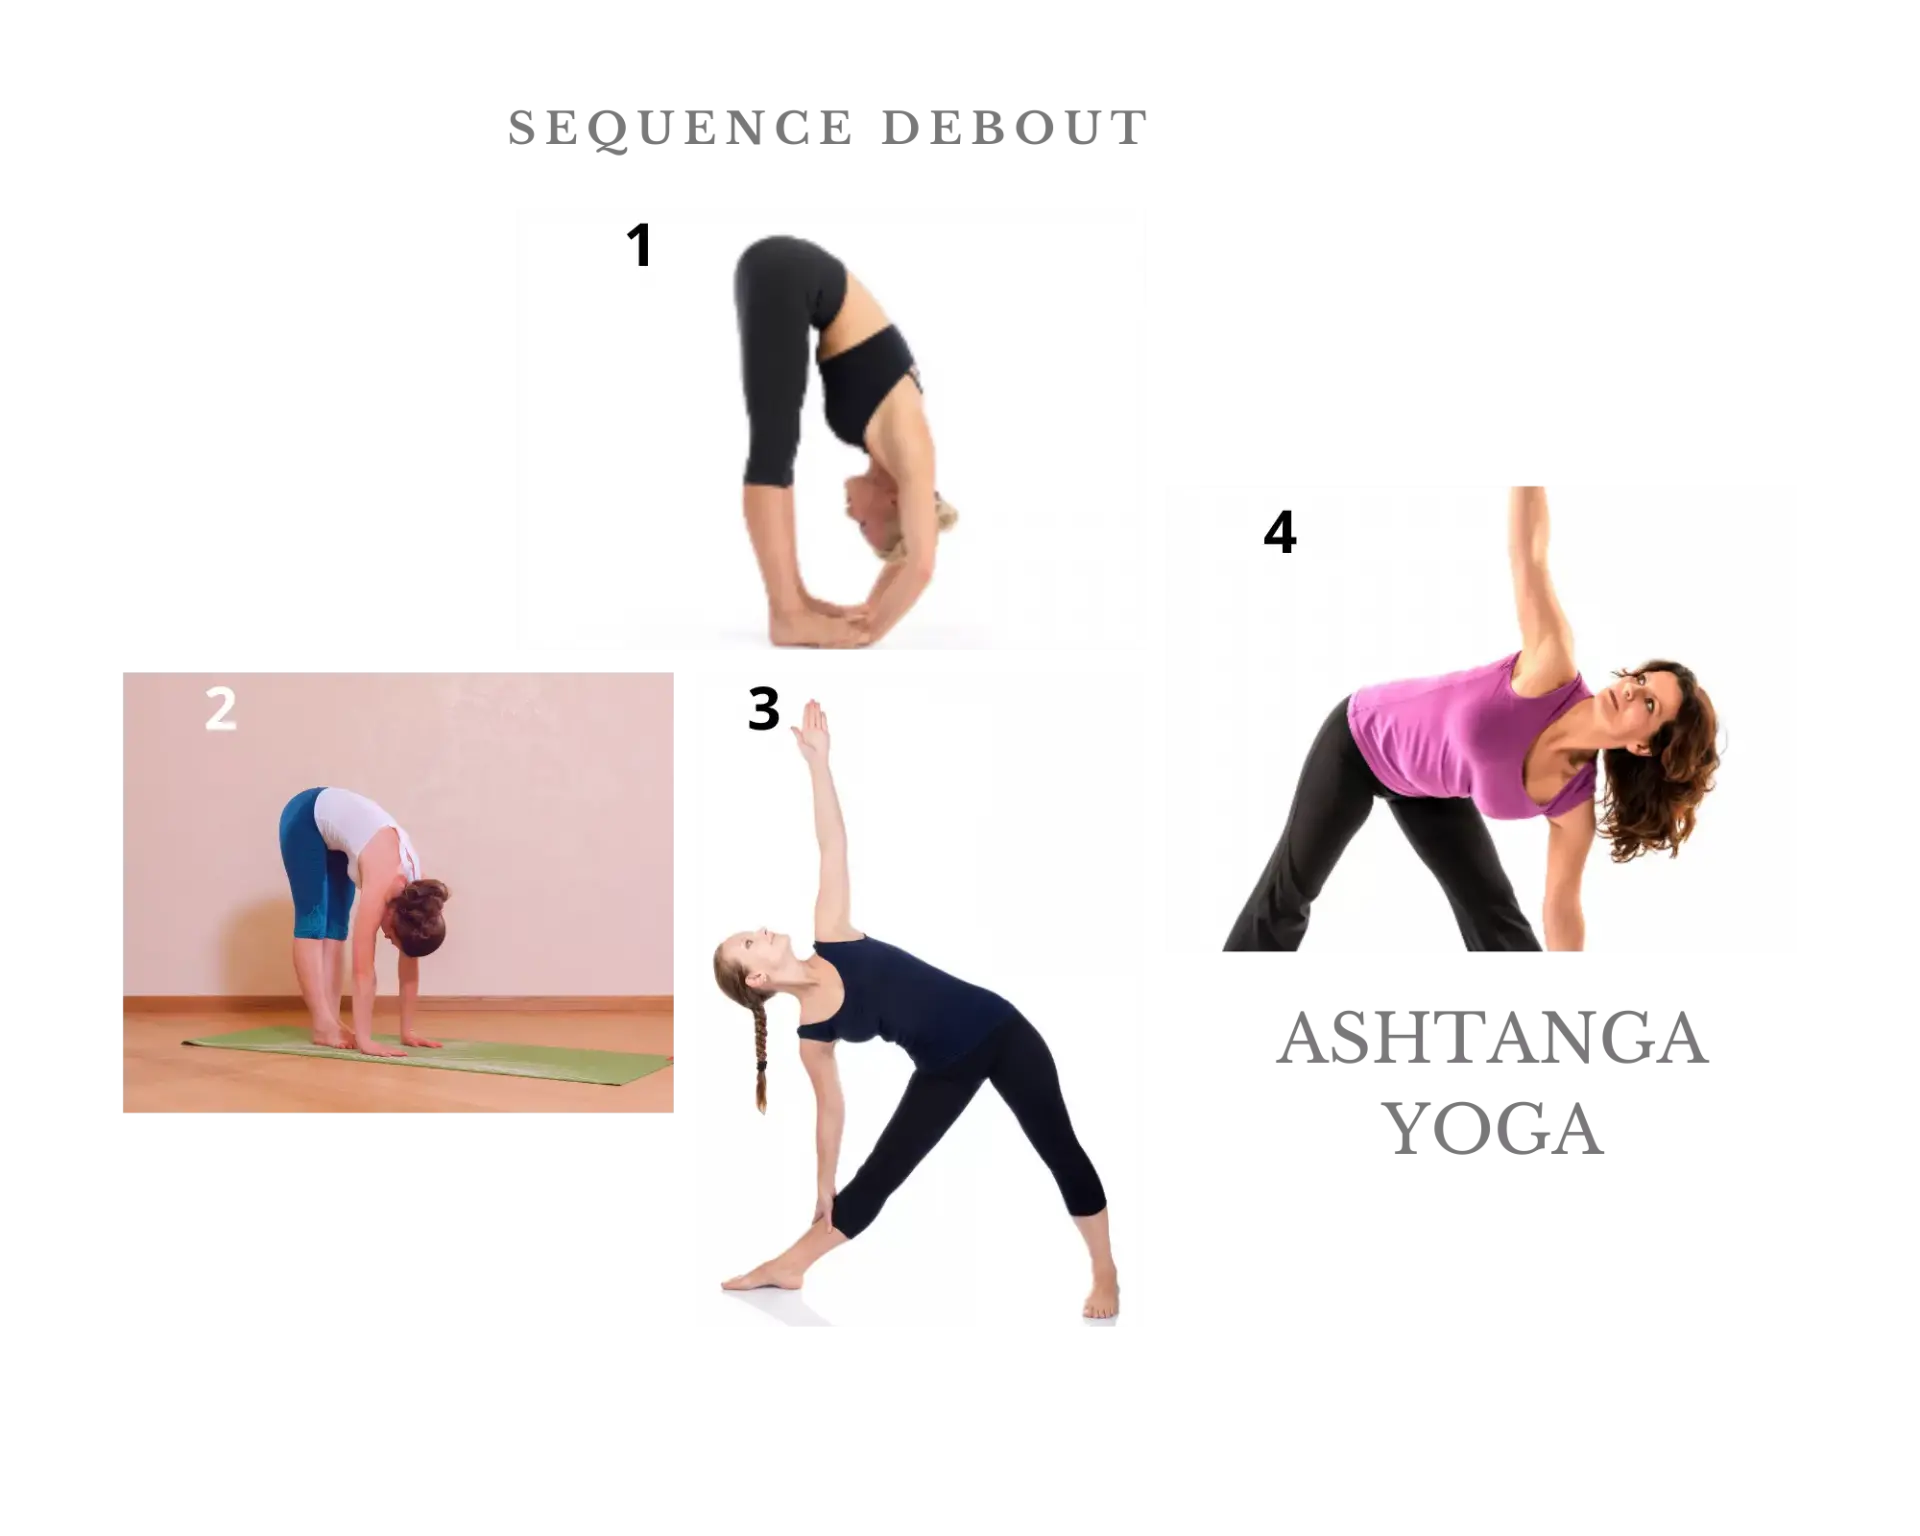 Séquence debout d'ashtanga yoga première série